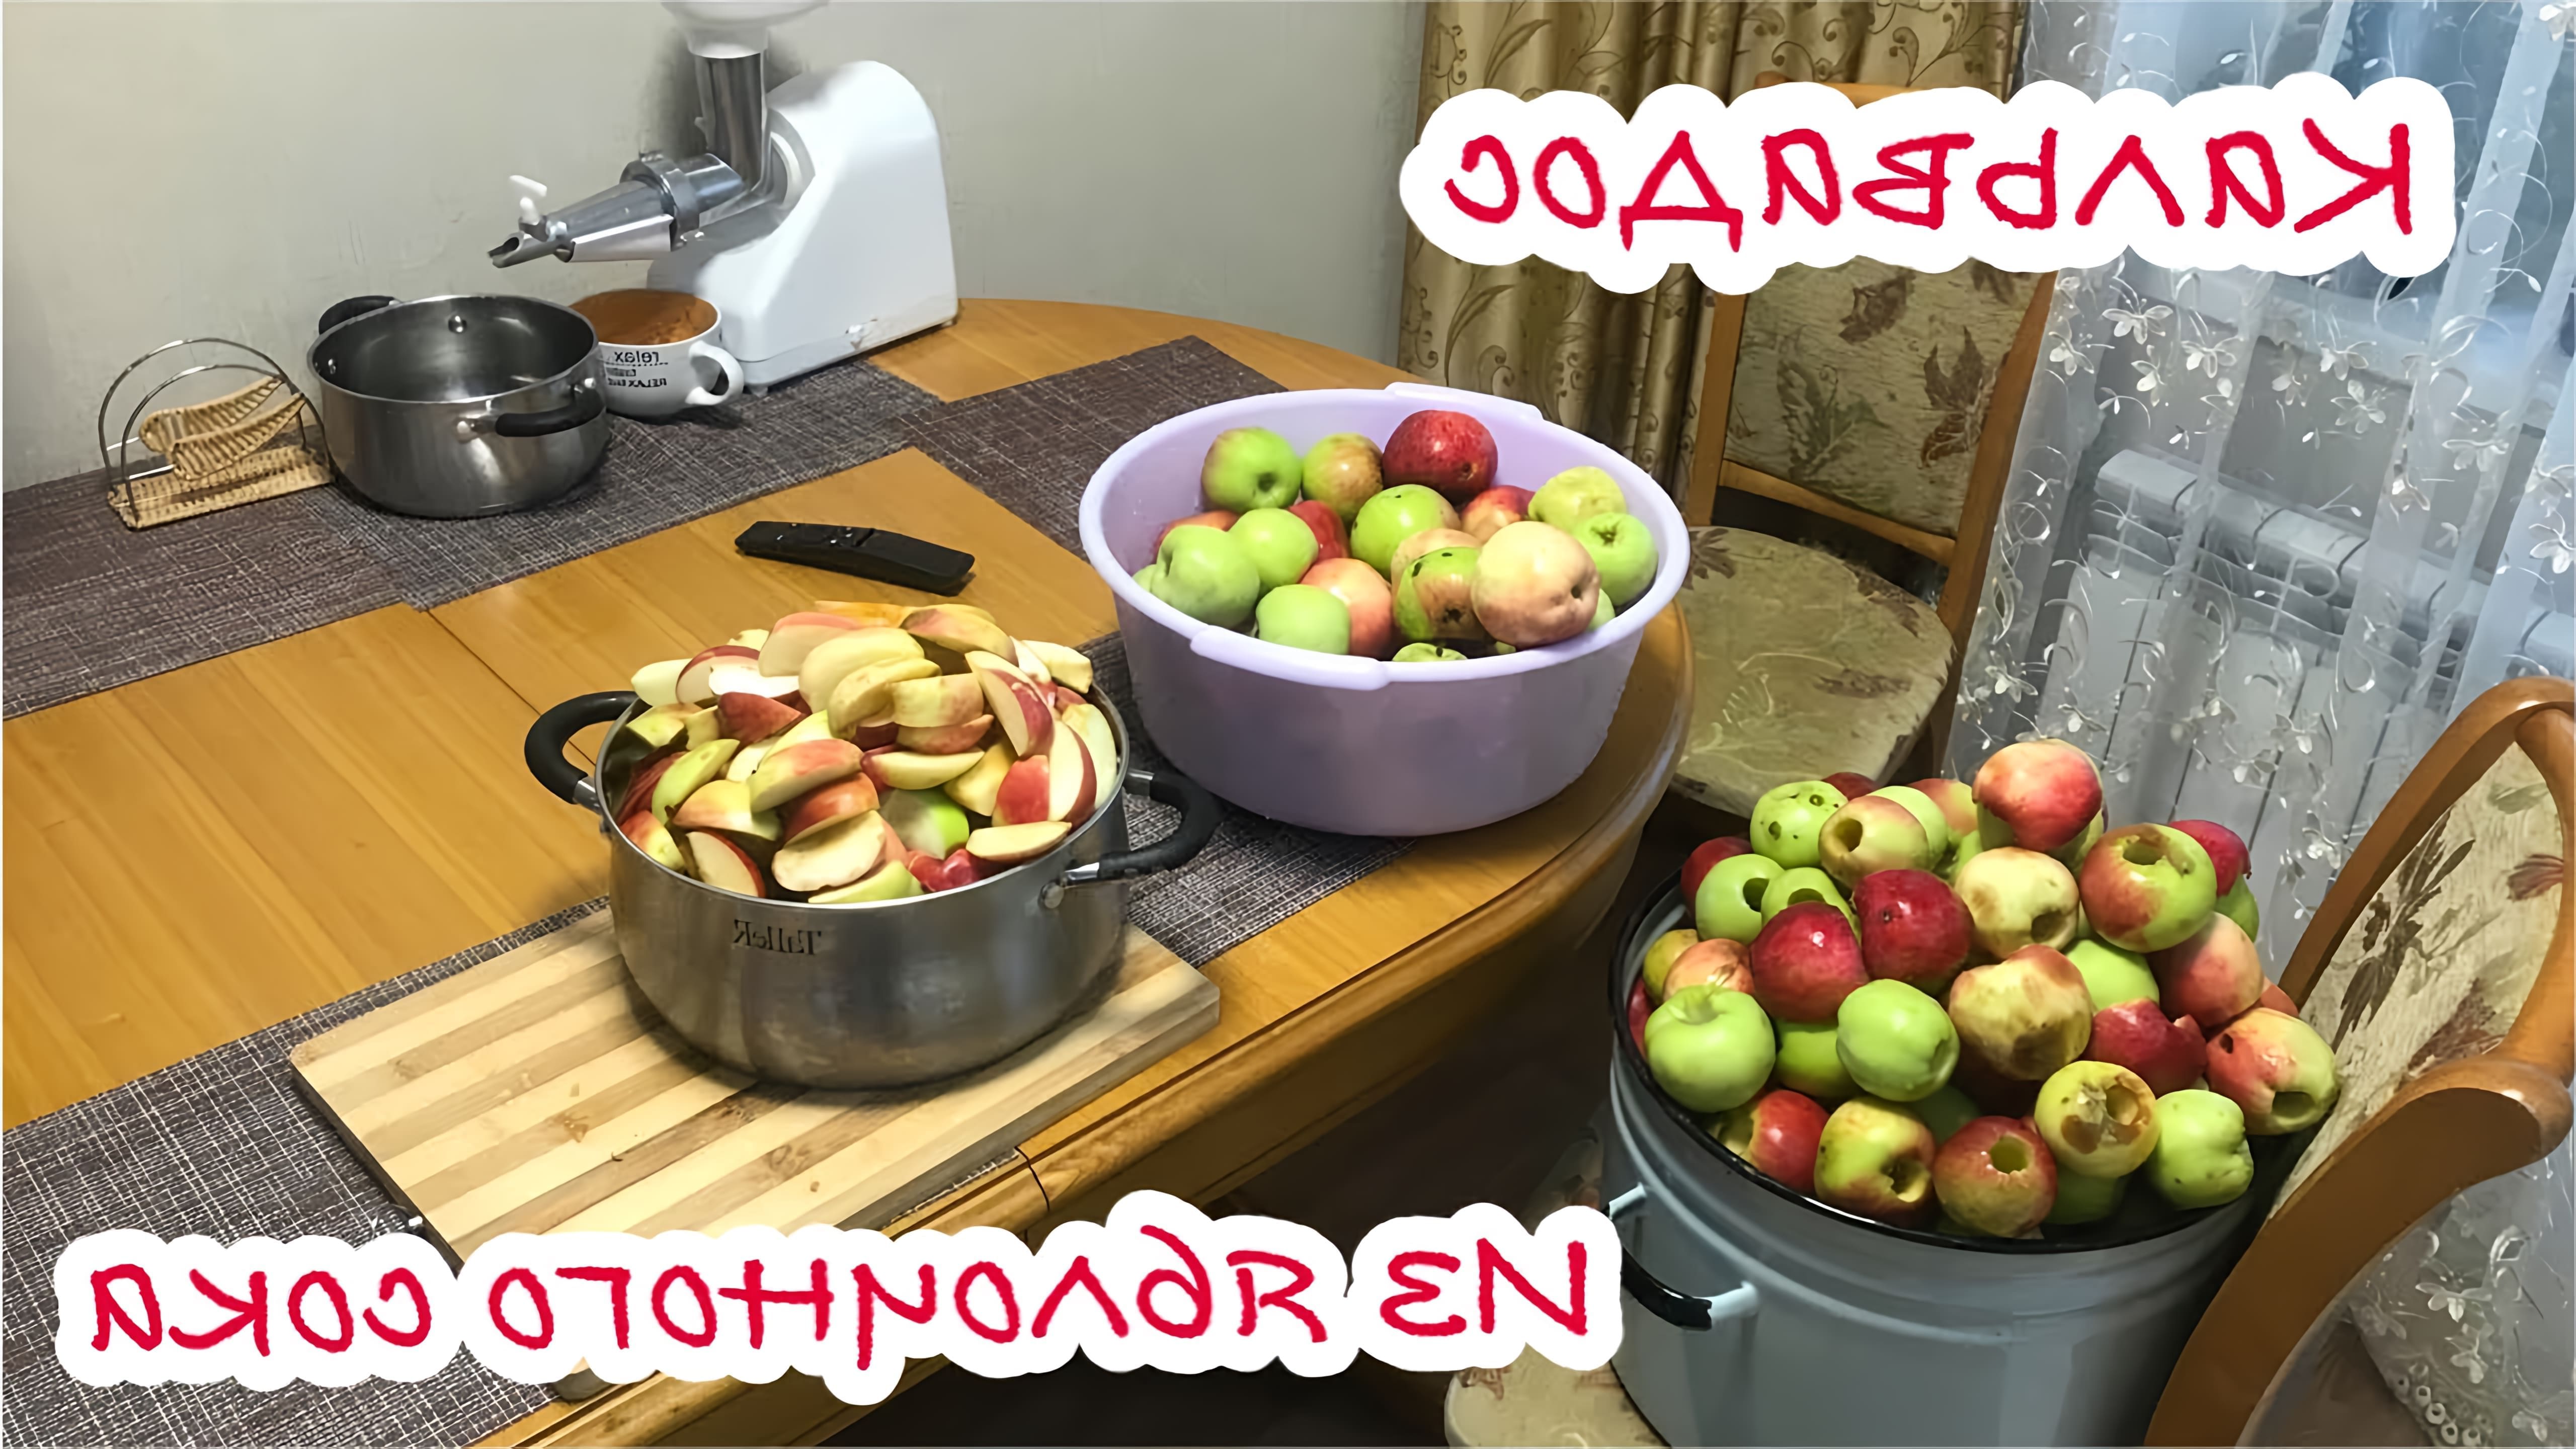 В данном видео демонстрируется процесс приготовления яблочного самогона, который затем перегоняется в кальвадос